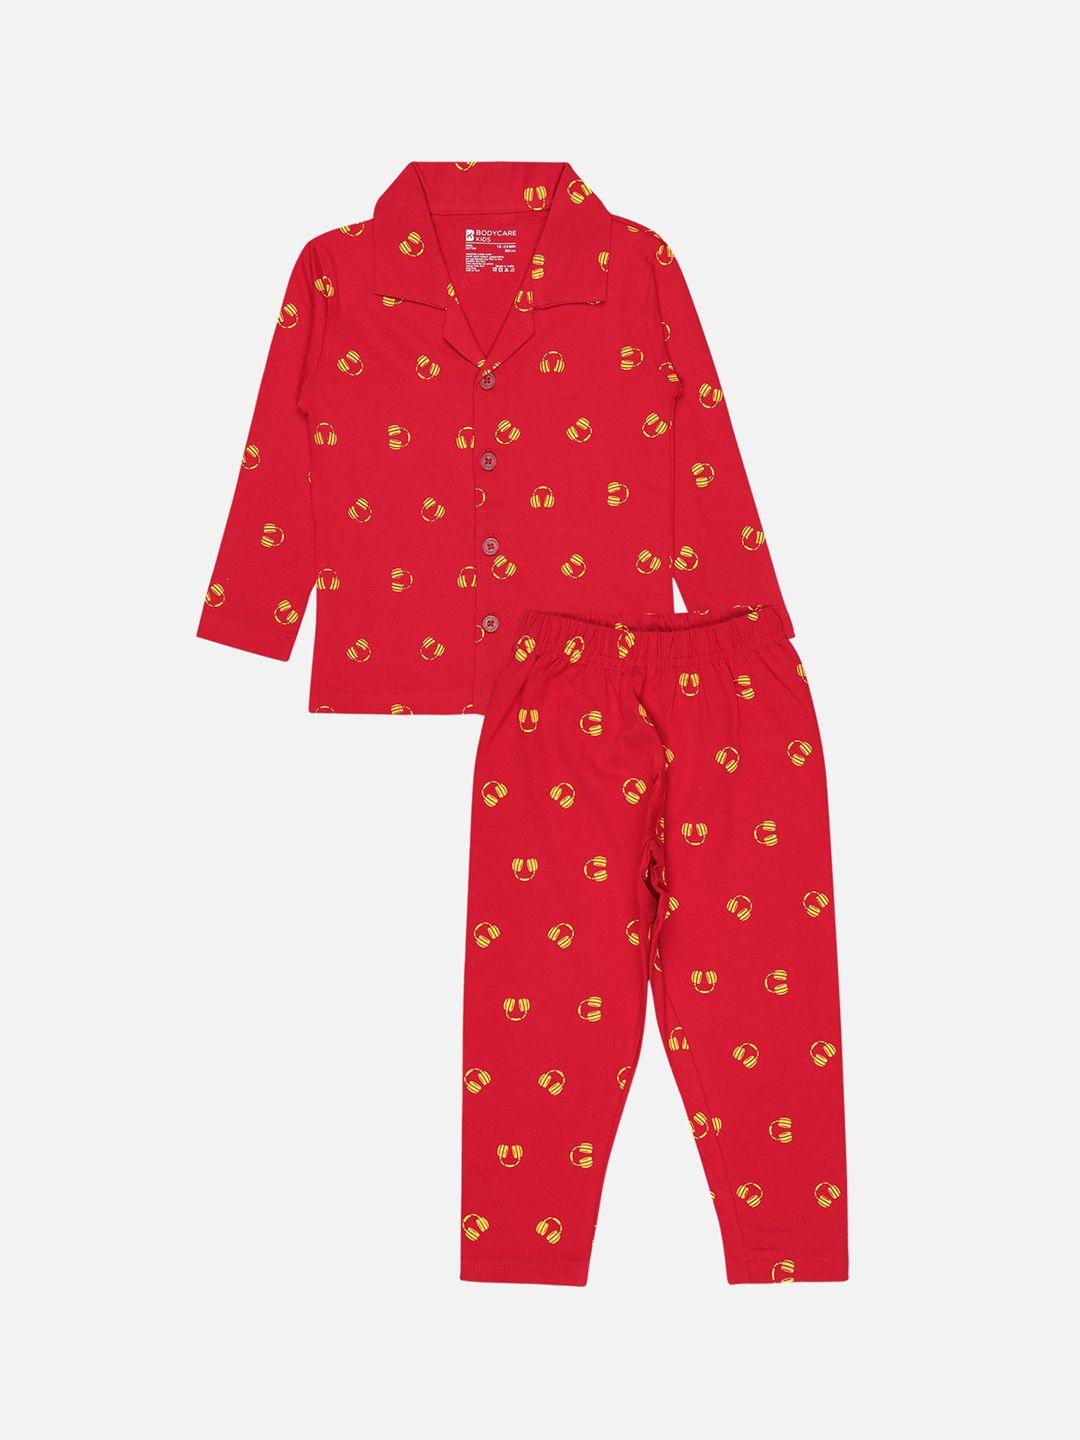 bodycare kids boys printed shirt with pyjamas night suit